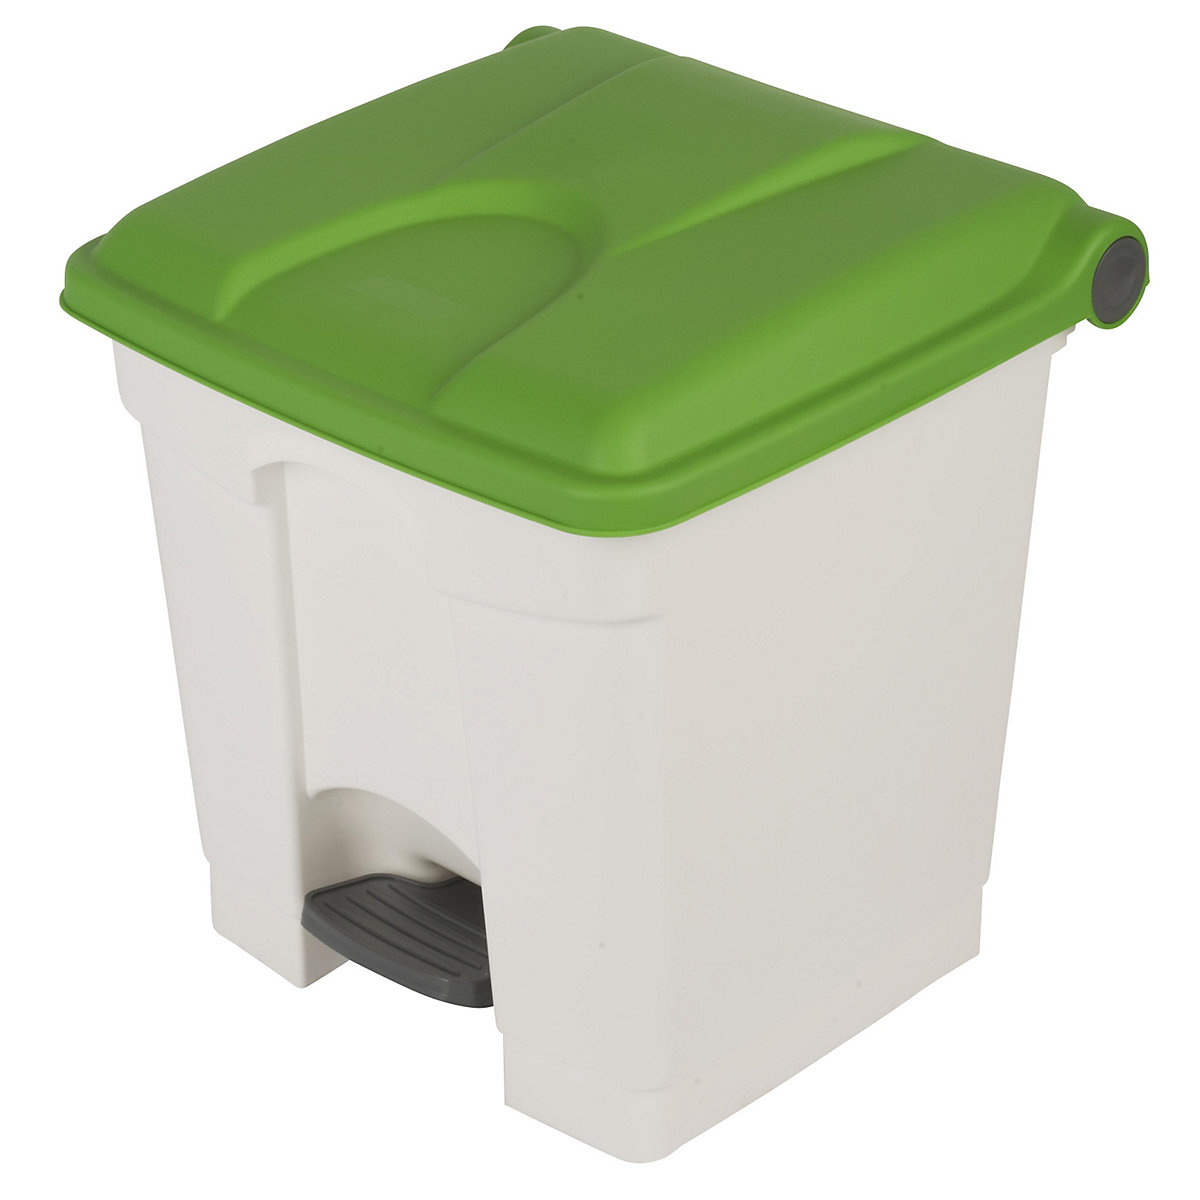 EUROKRAFTbasic – Nádoba na odpad s pedálem, objem 30 l, š x v x h 410 x 435 x 400 mm, bílá, zelené víko